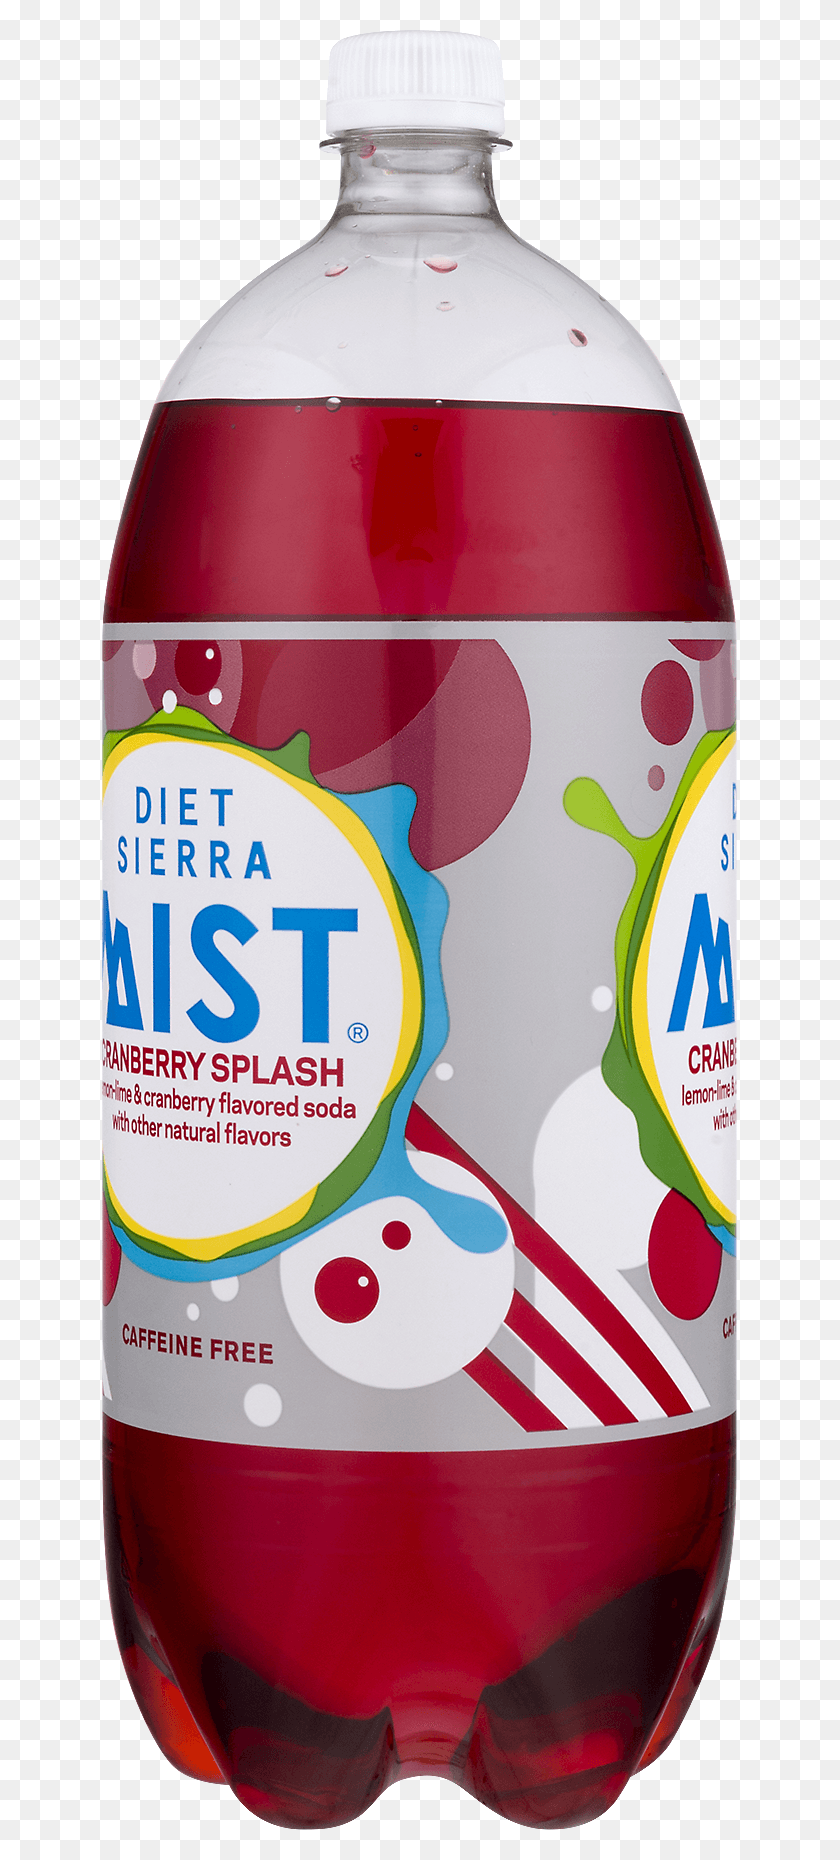 635x1800 Descargar Png Diet Sierra Mist, Sin Cafeína, Gluten, Arándano, Sierra Mist, Lata, Botella, Hd Png